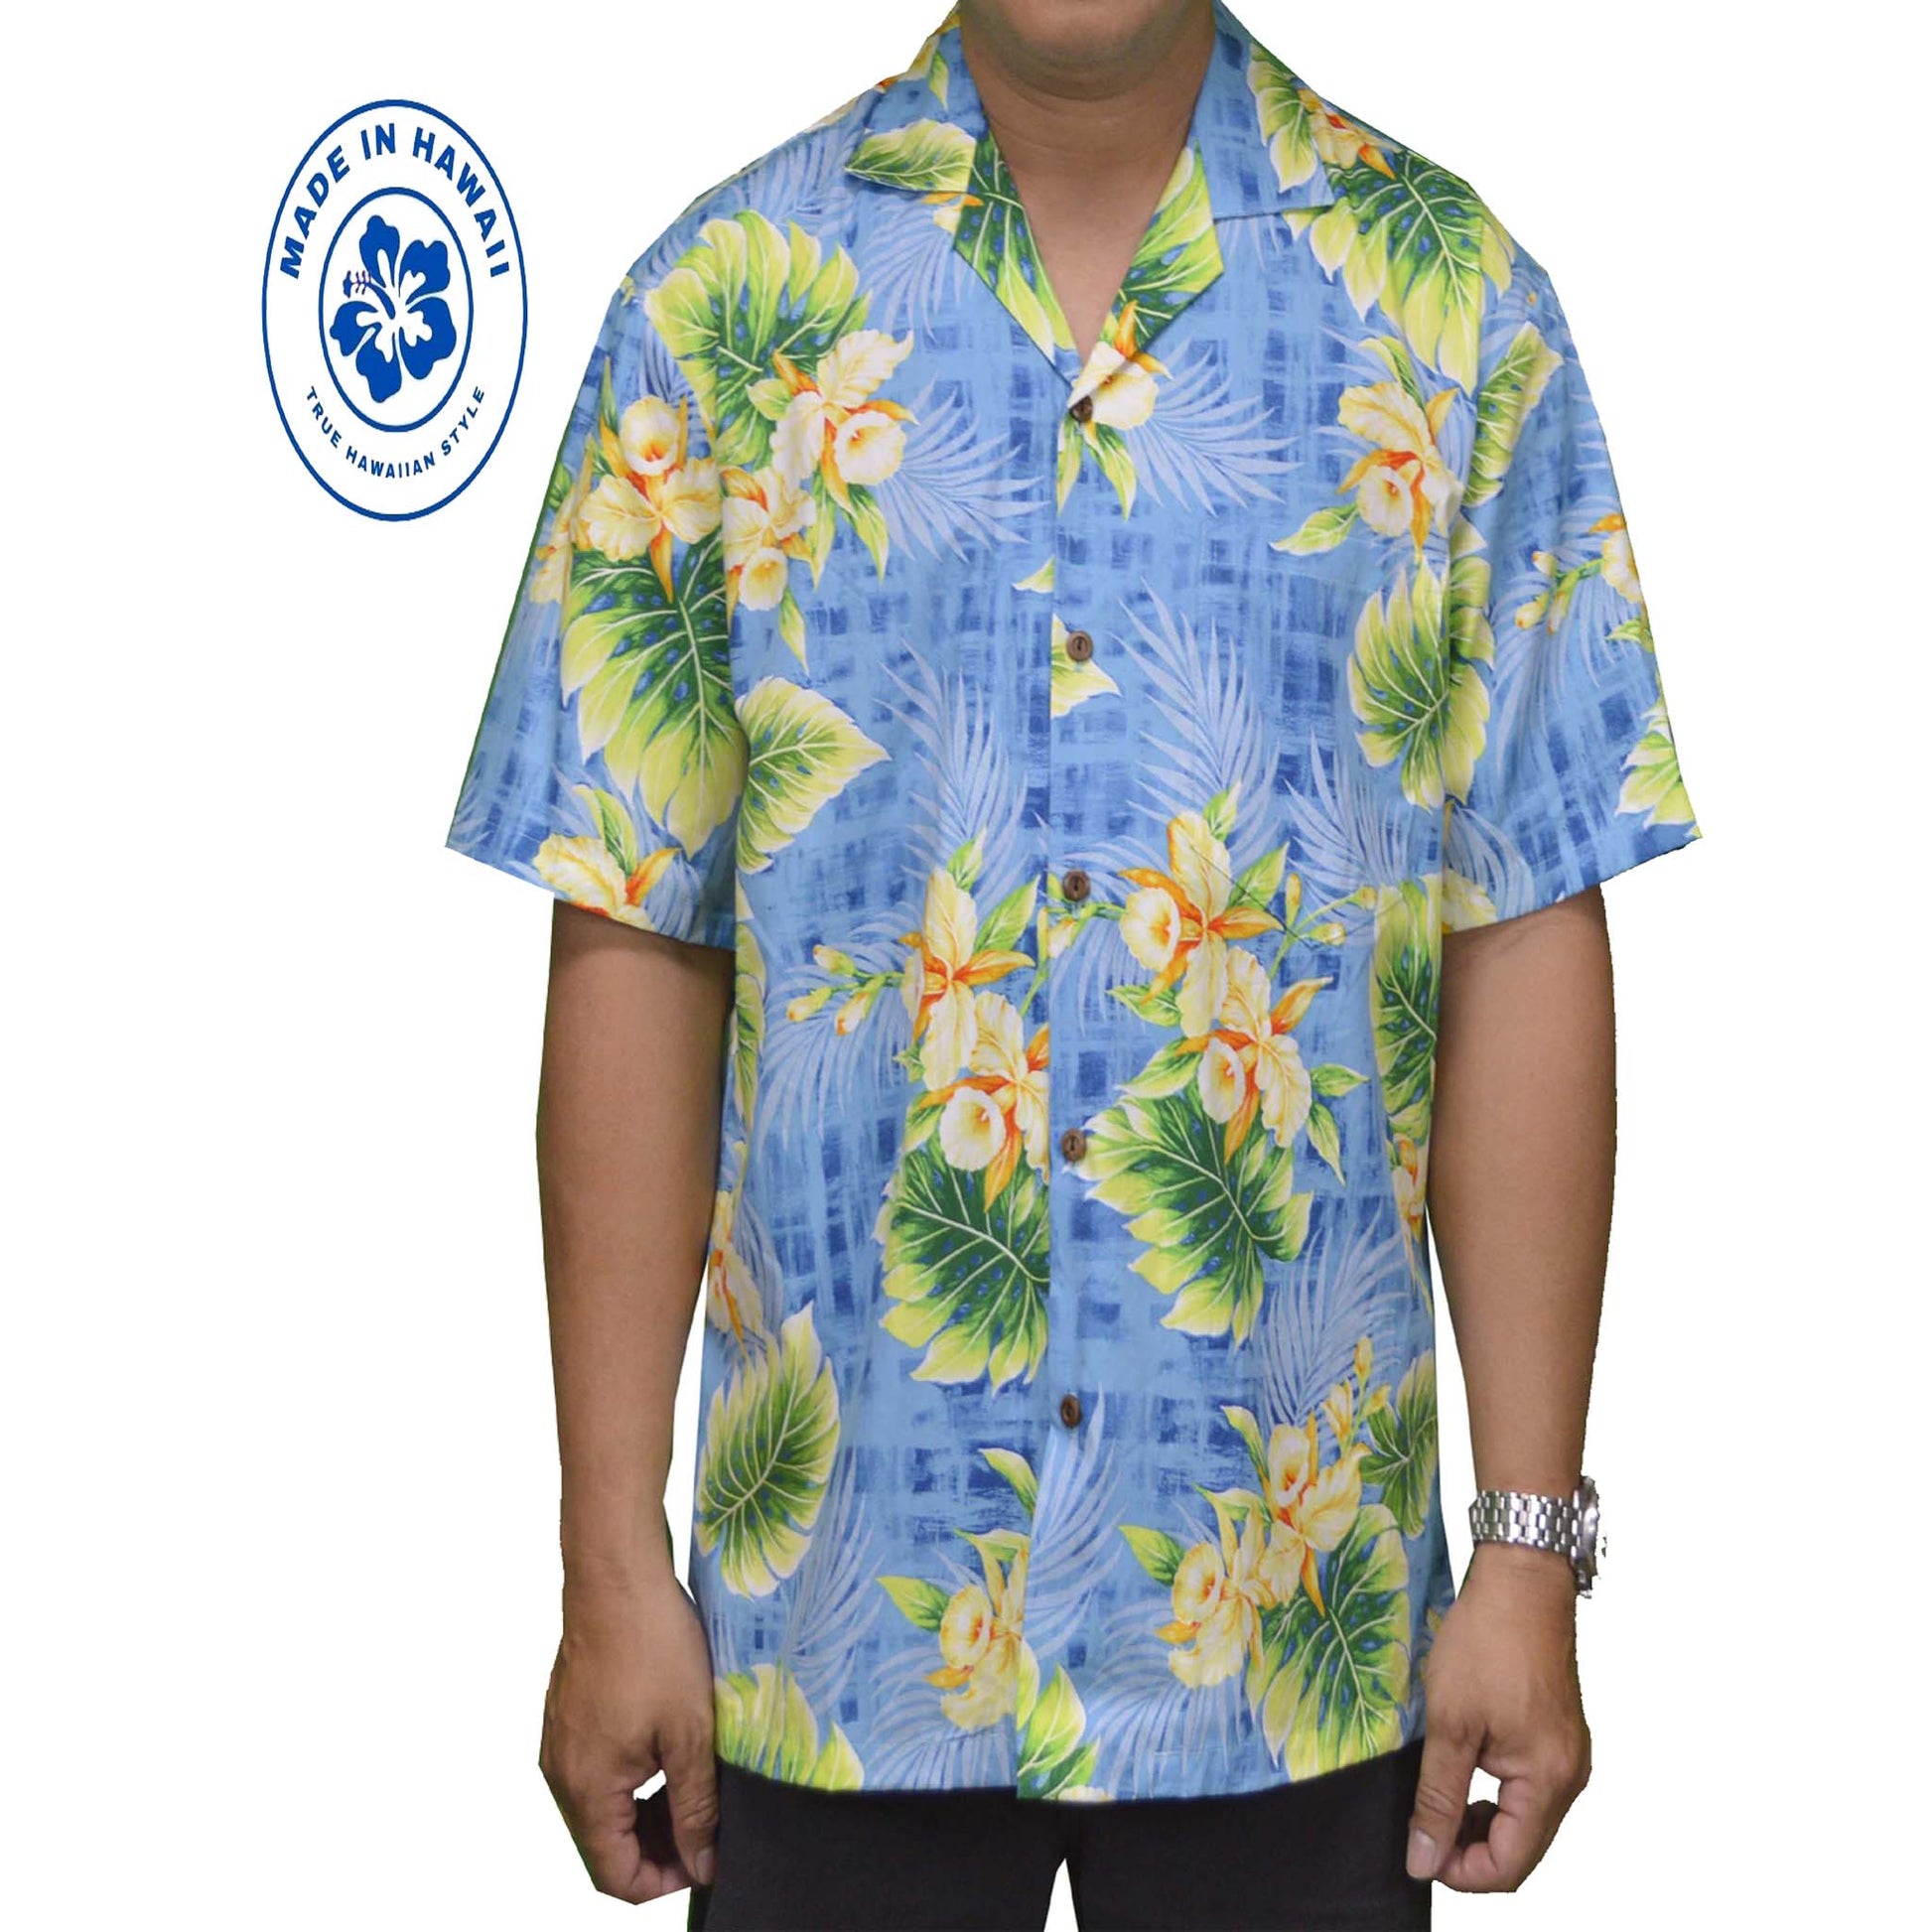 ky hawaiian shirt made in hawaii